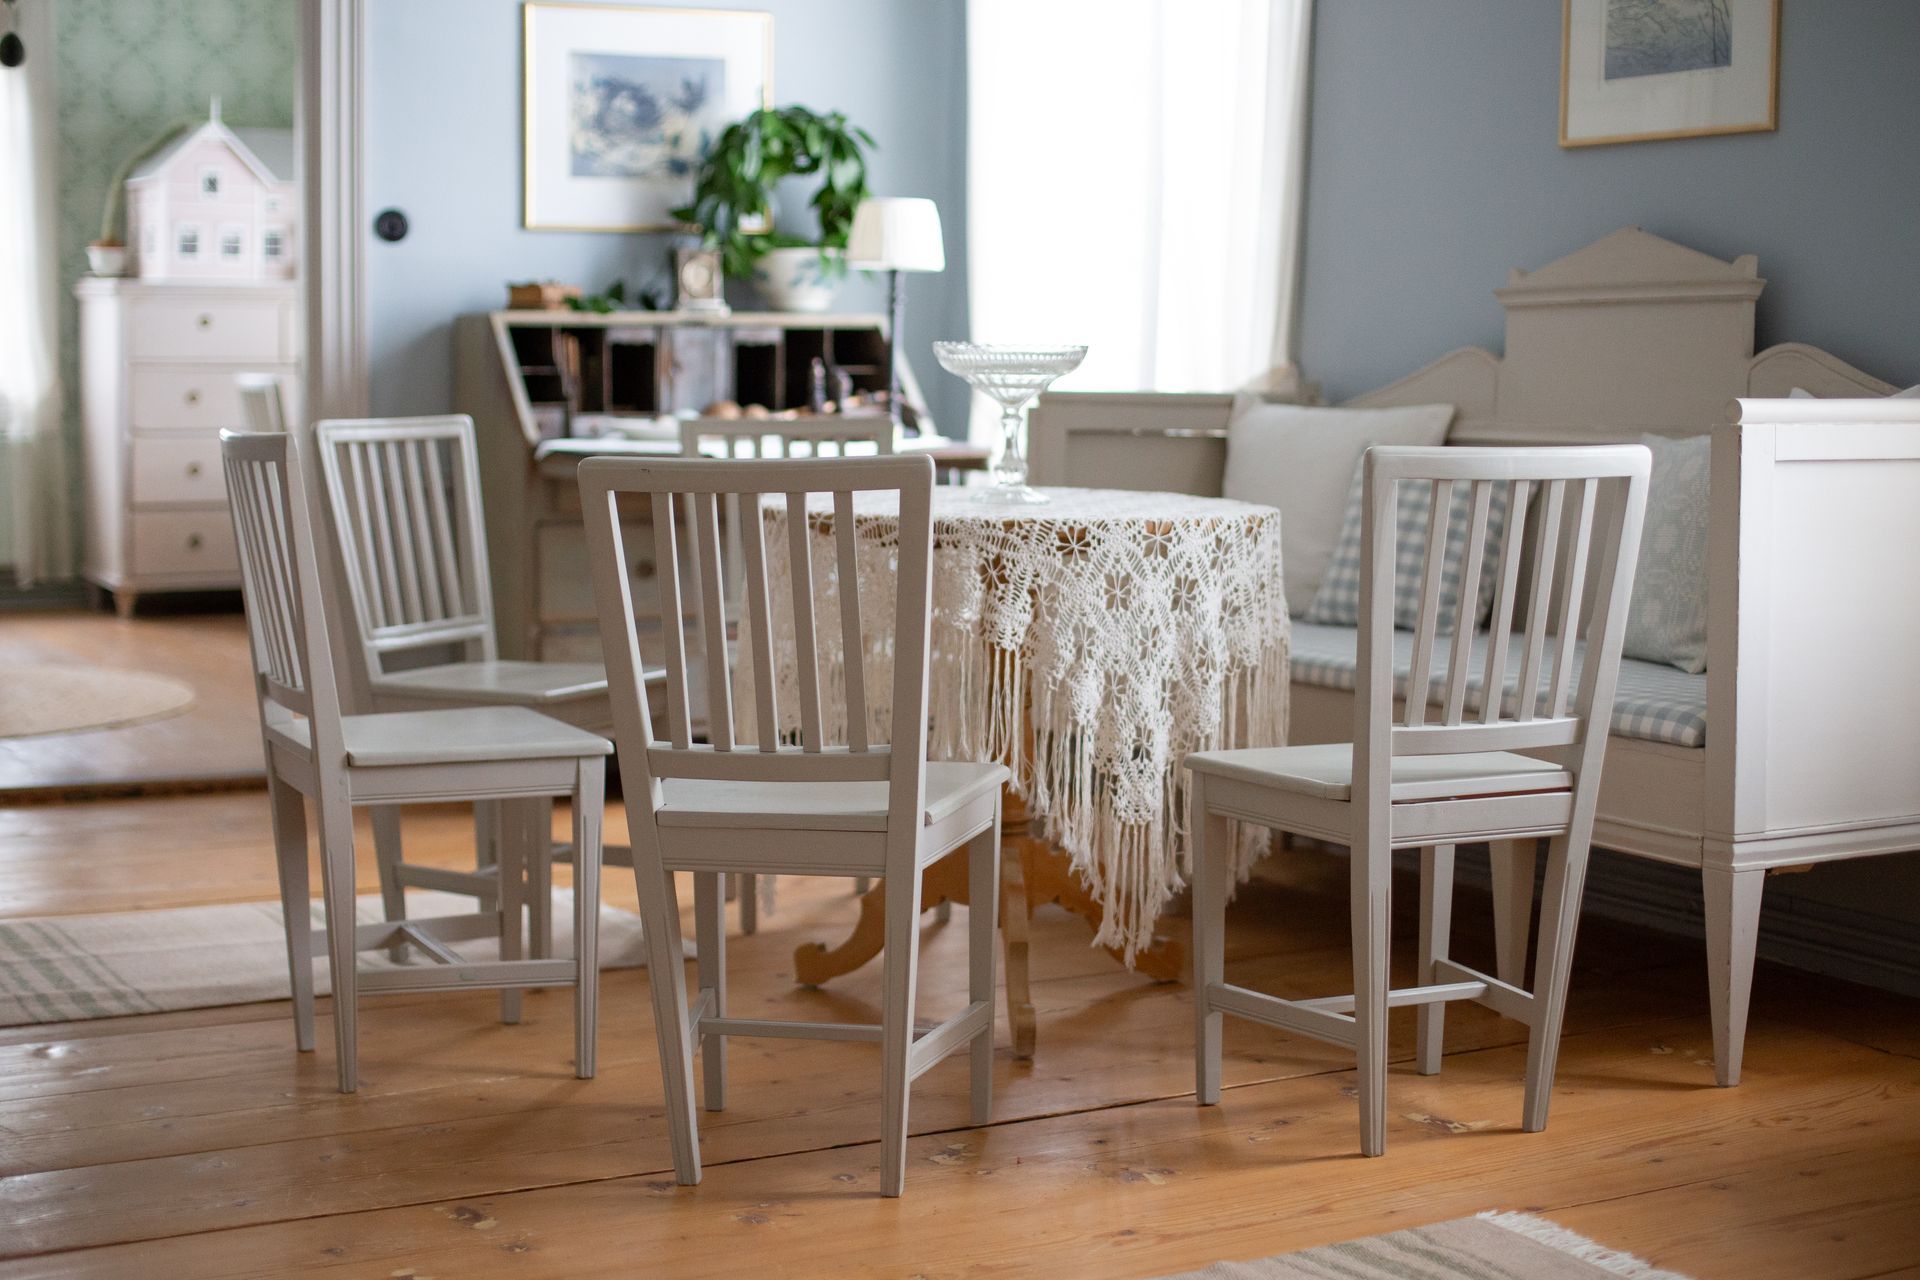 Kuva salista, jossa vaalean harmaa tuoli ja pöytäkalusto sekä vaalea vanhanaikainen talonpoikaissohva